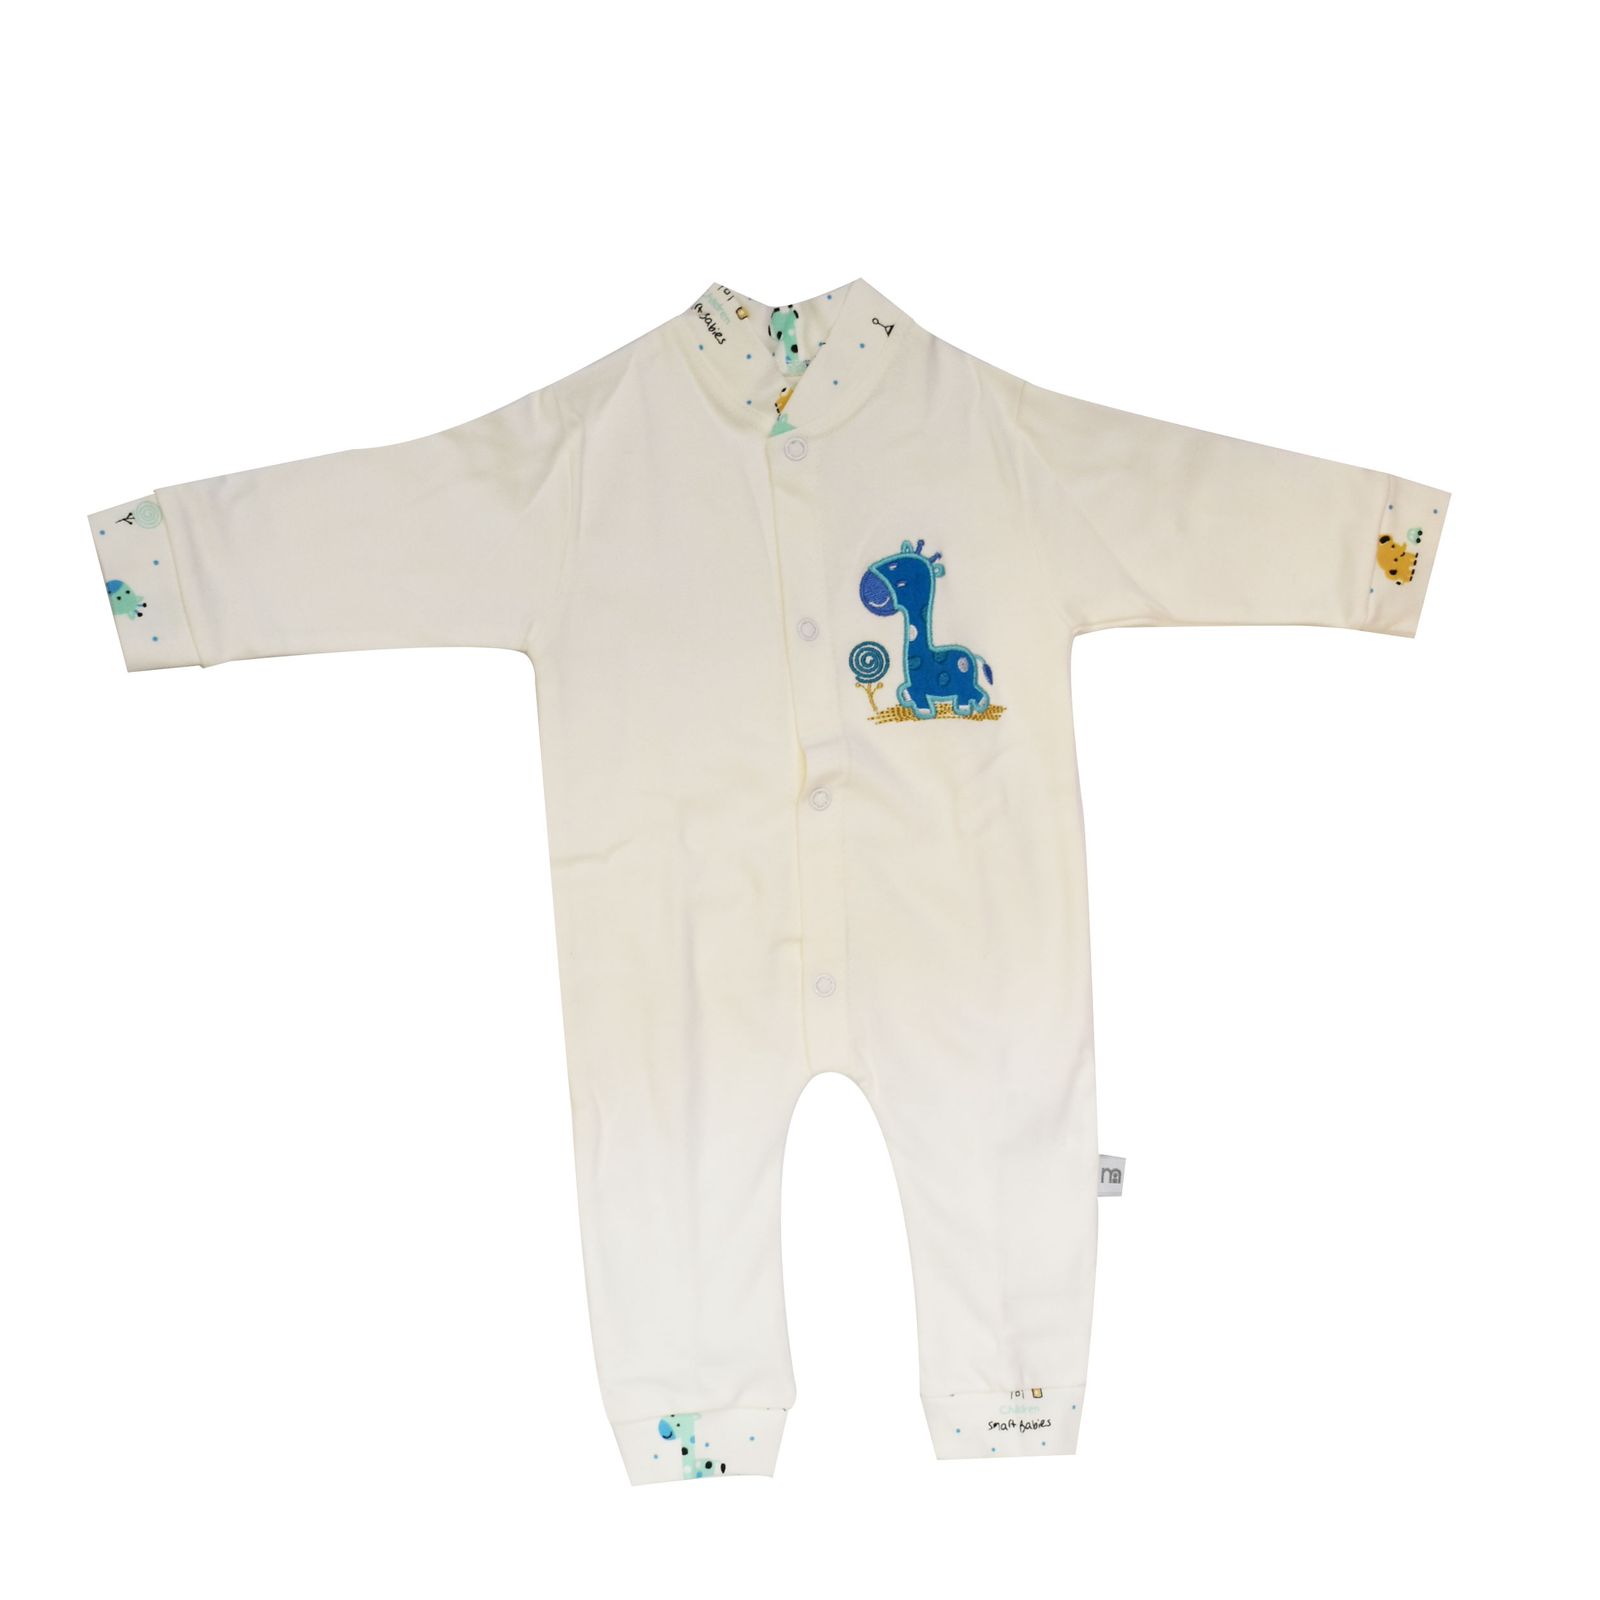  ست 7 تکه لباس نوزادی مادرکر طرح زرافه کد M454.12 -  - 8